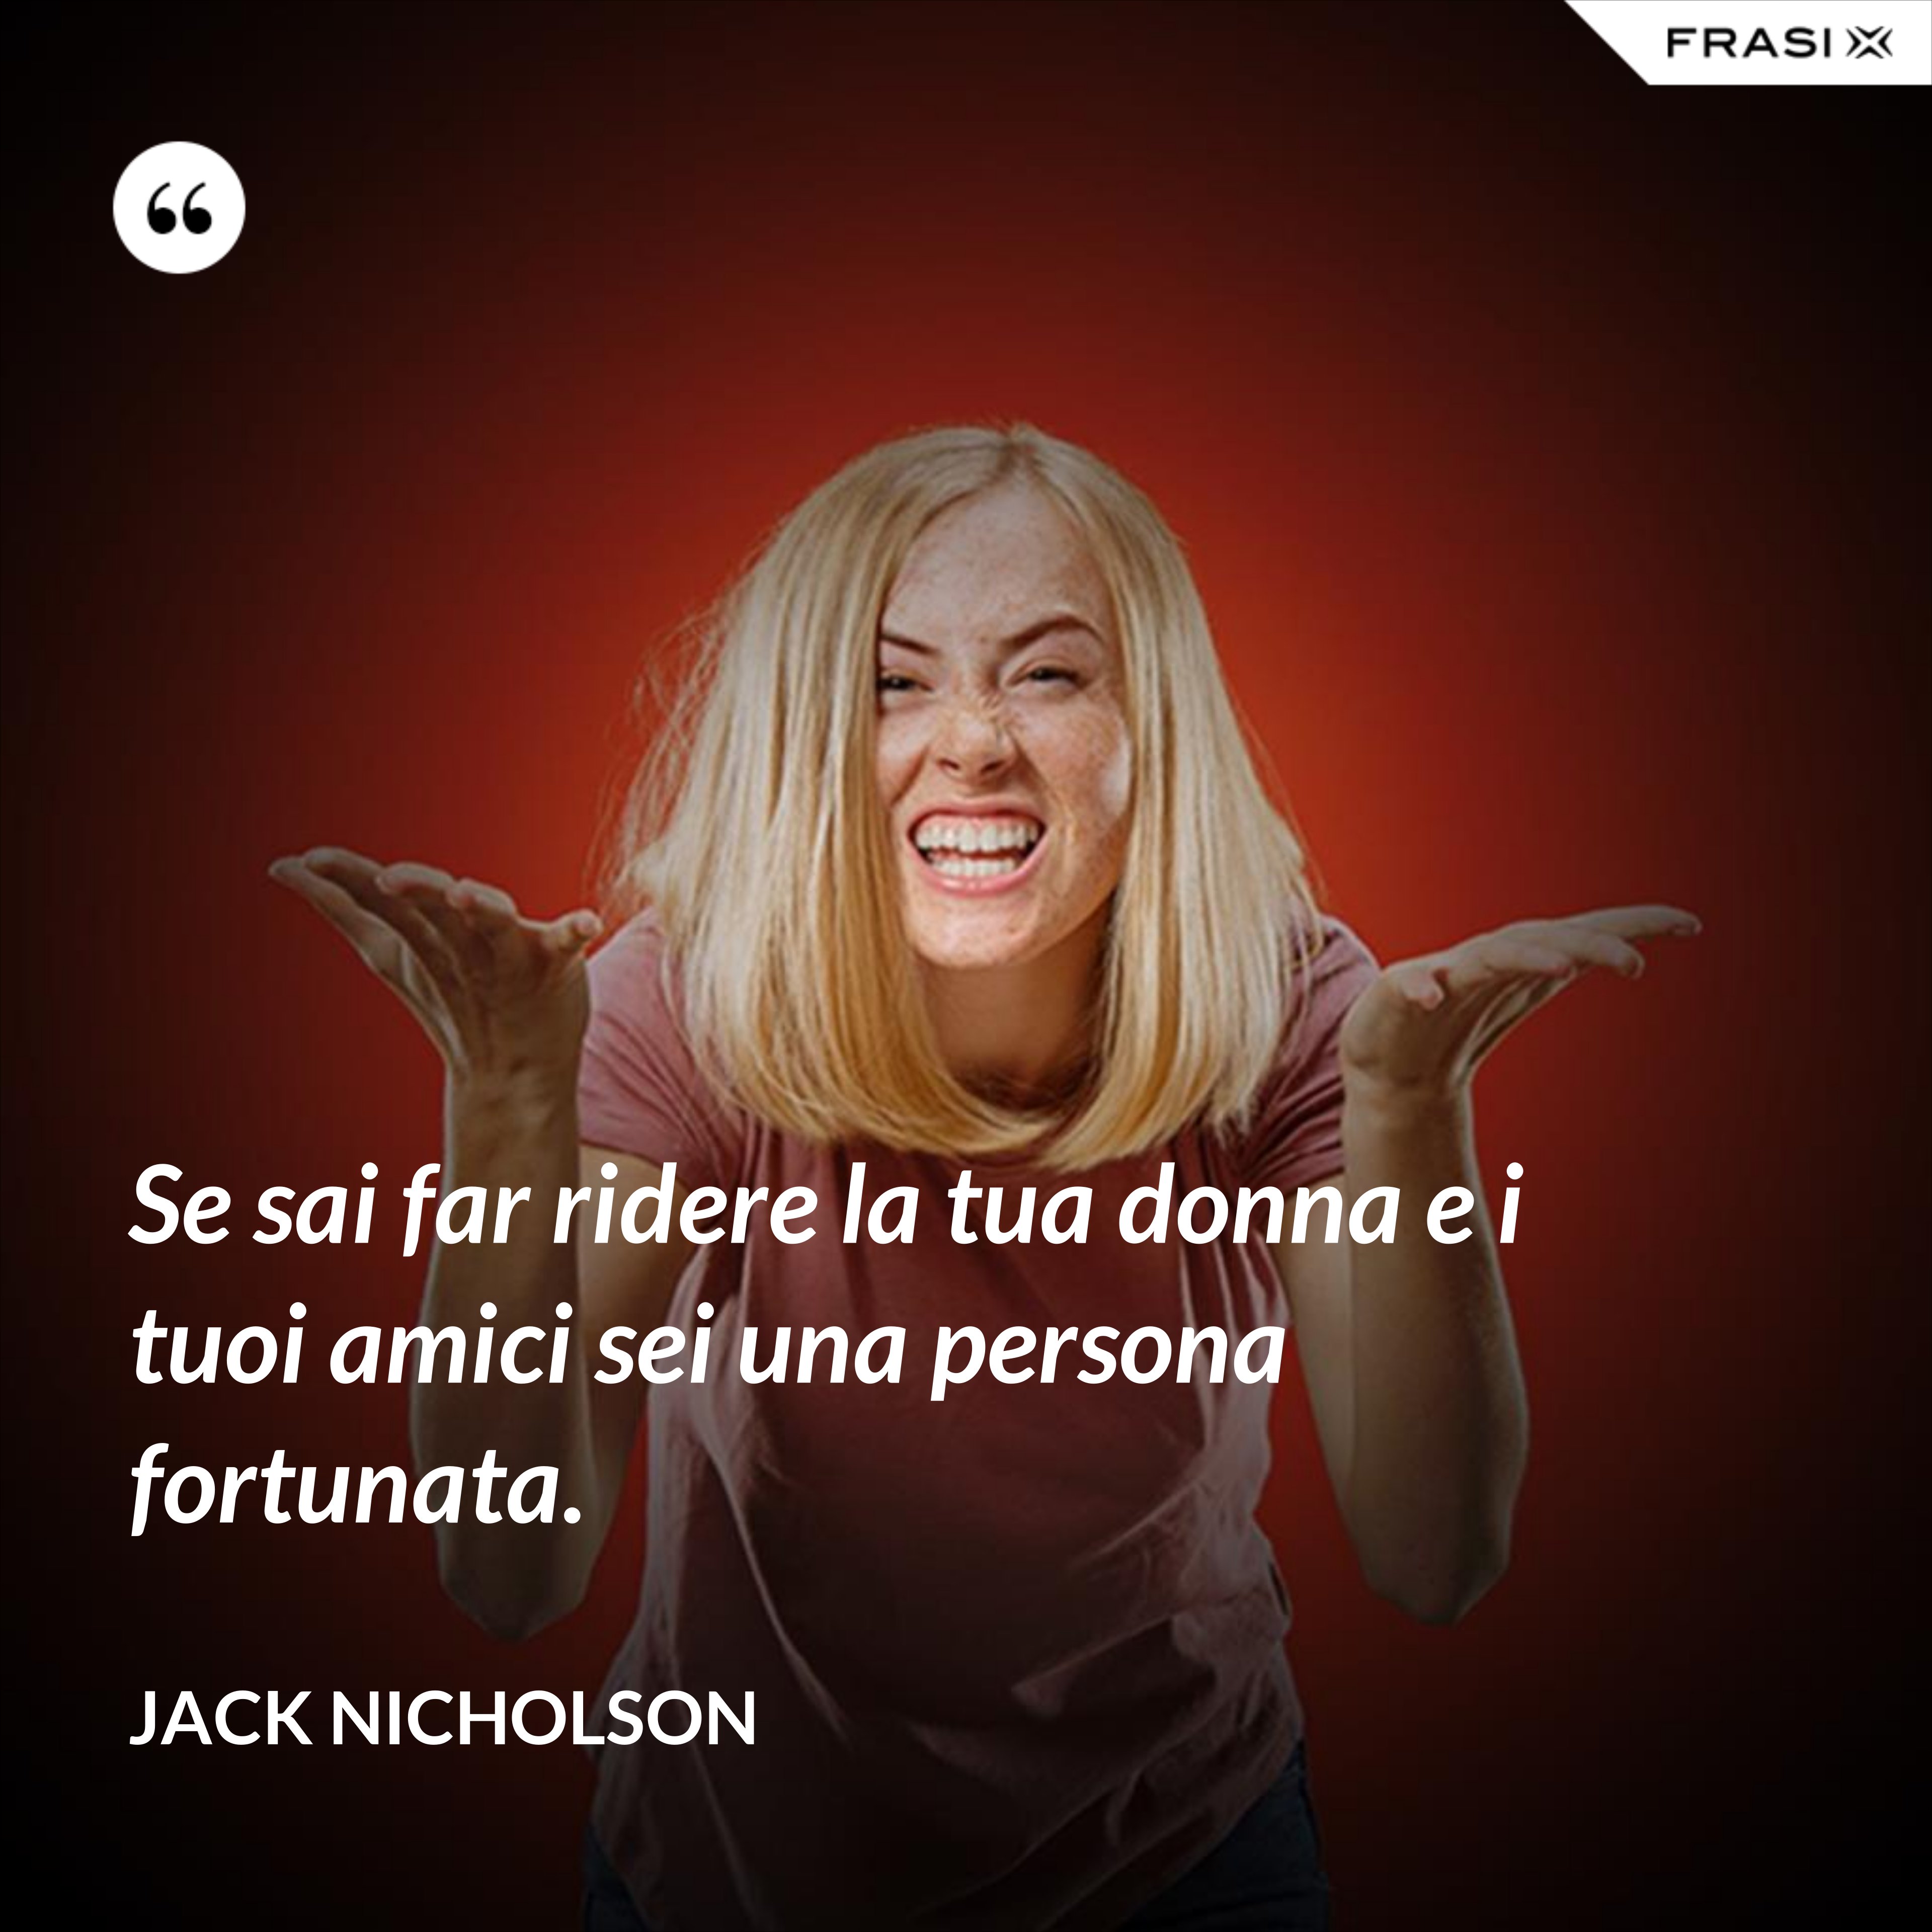 Se sai far ridere la tua donna e i tuoi amici sei una persona fortunata. - Jack Nicholson